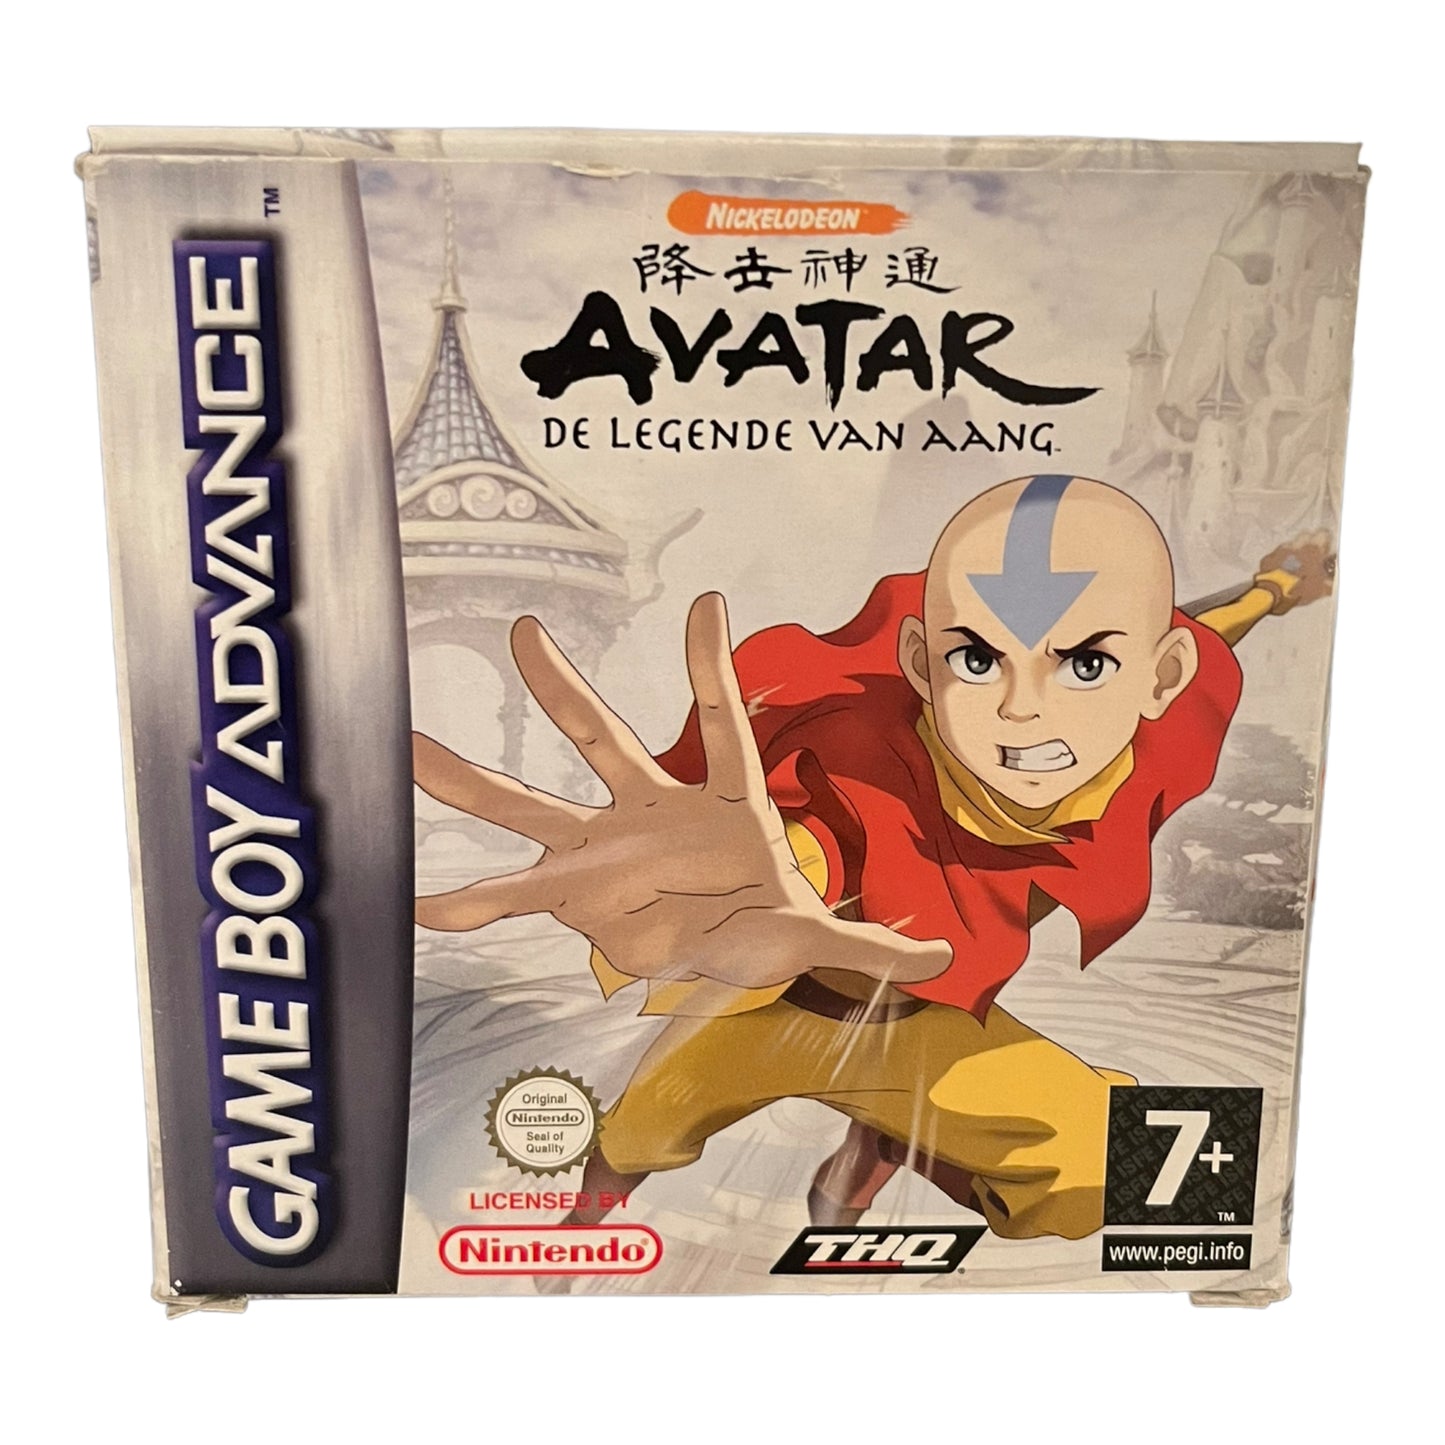 Nickelodeon Avatar De Legende Van Aang